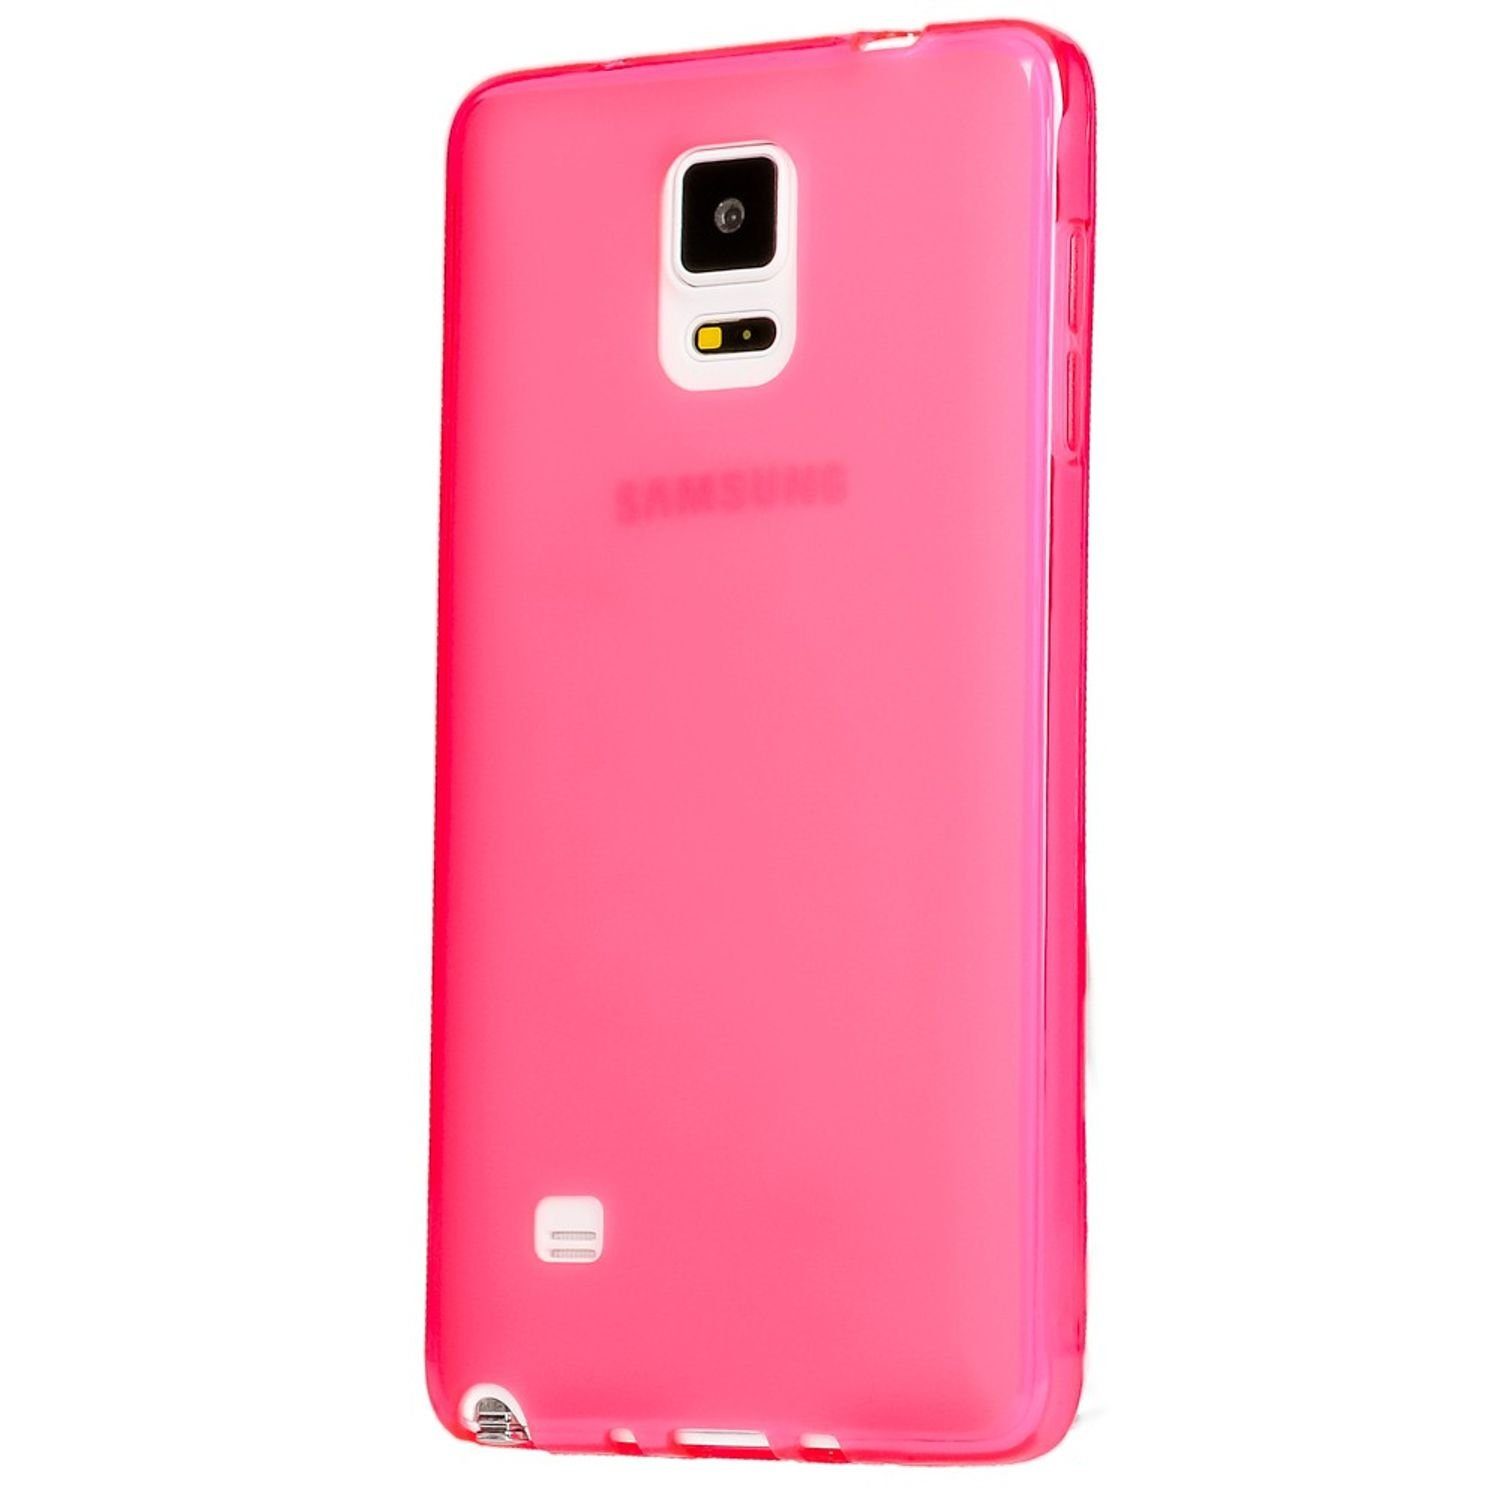 Nalia Smartphone-Hülle Samsung Galaxy Note 4, Durchscheinende Silikon Hülle / Soft Case / Slim Cover